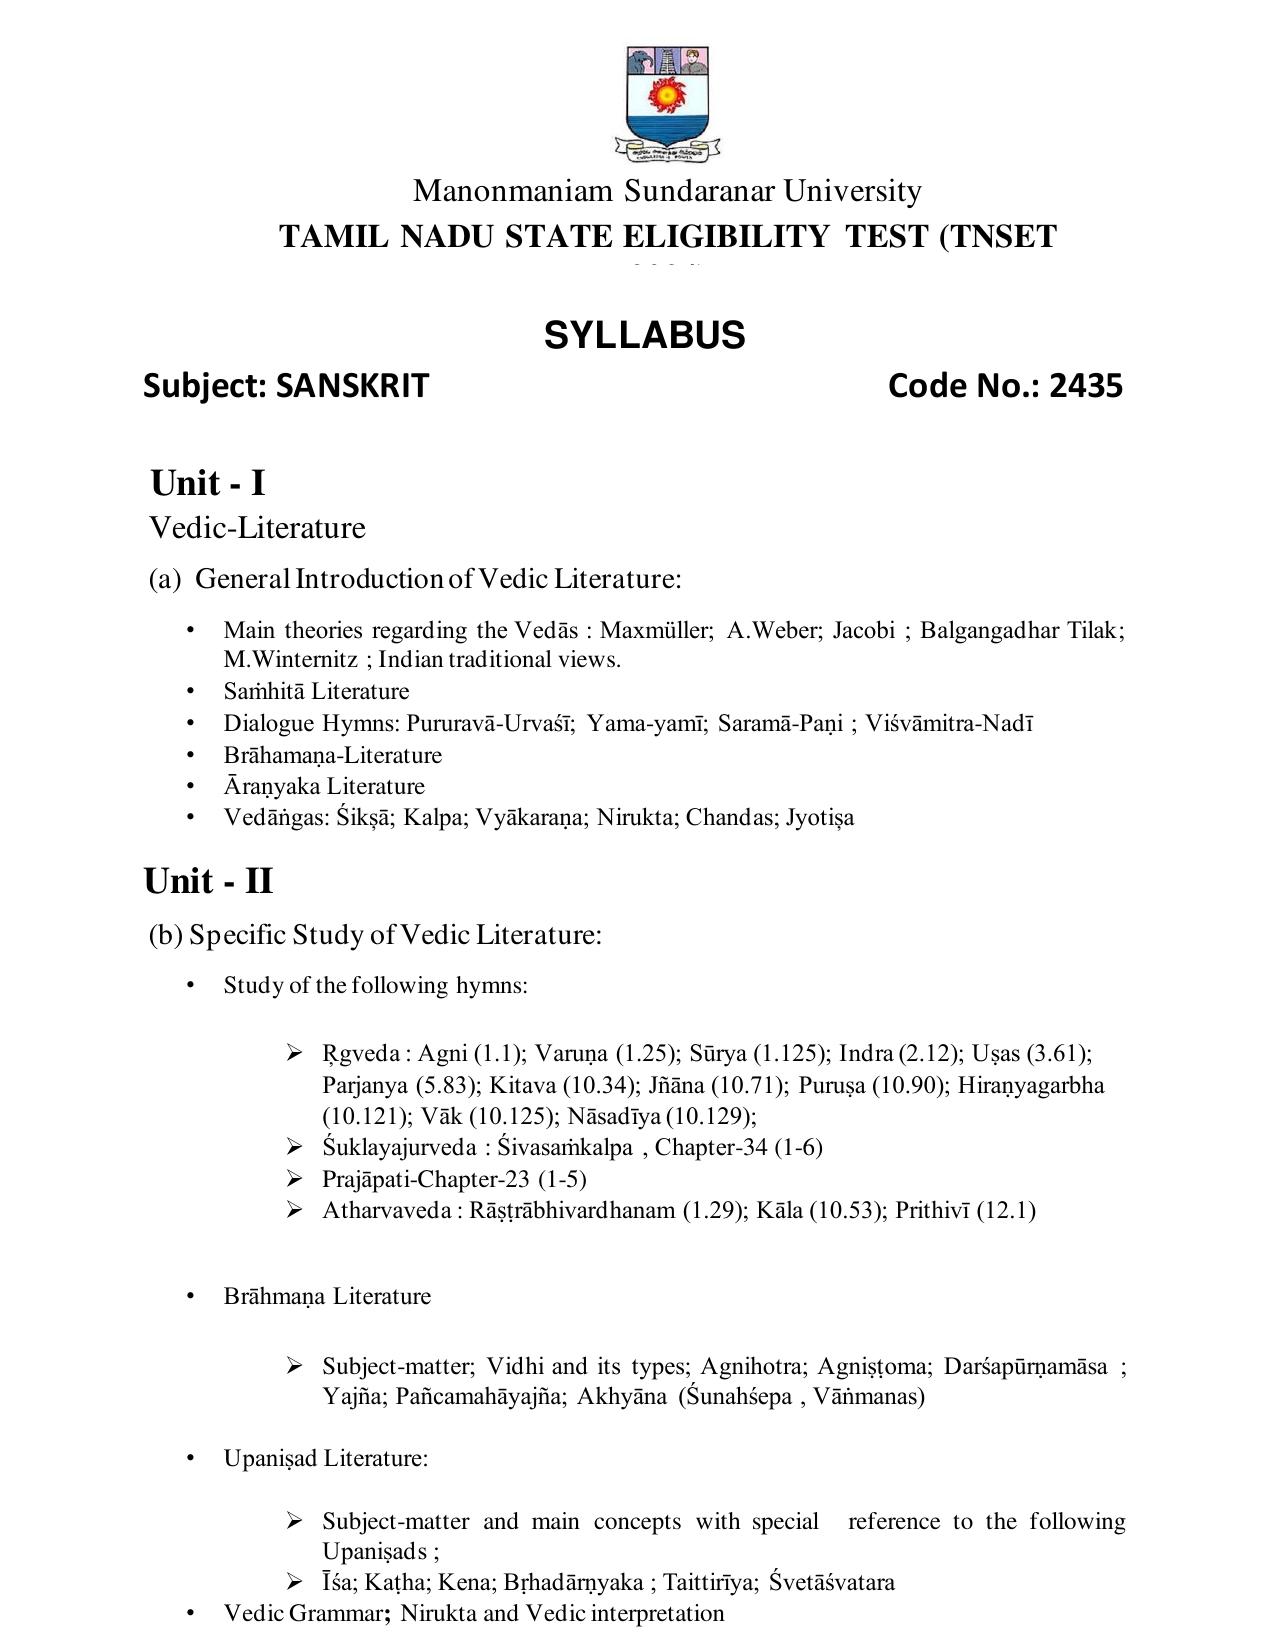 TNSET Syllabus - Sanskrit - Page 1